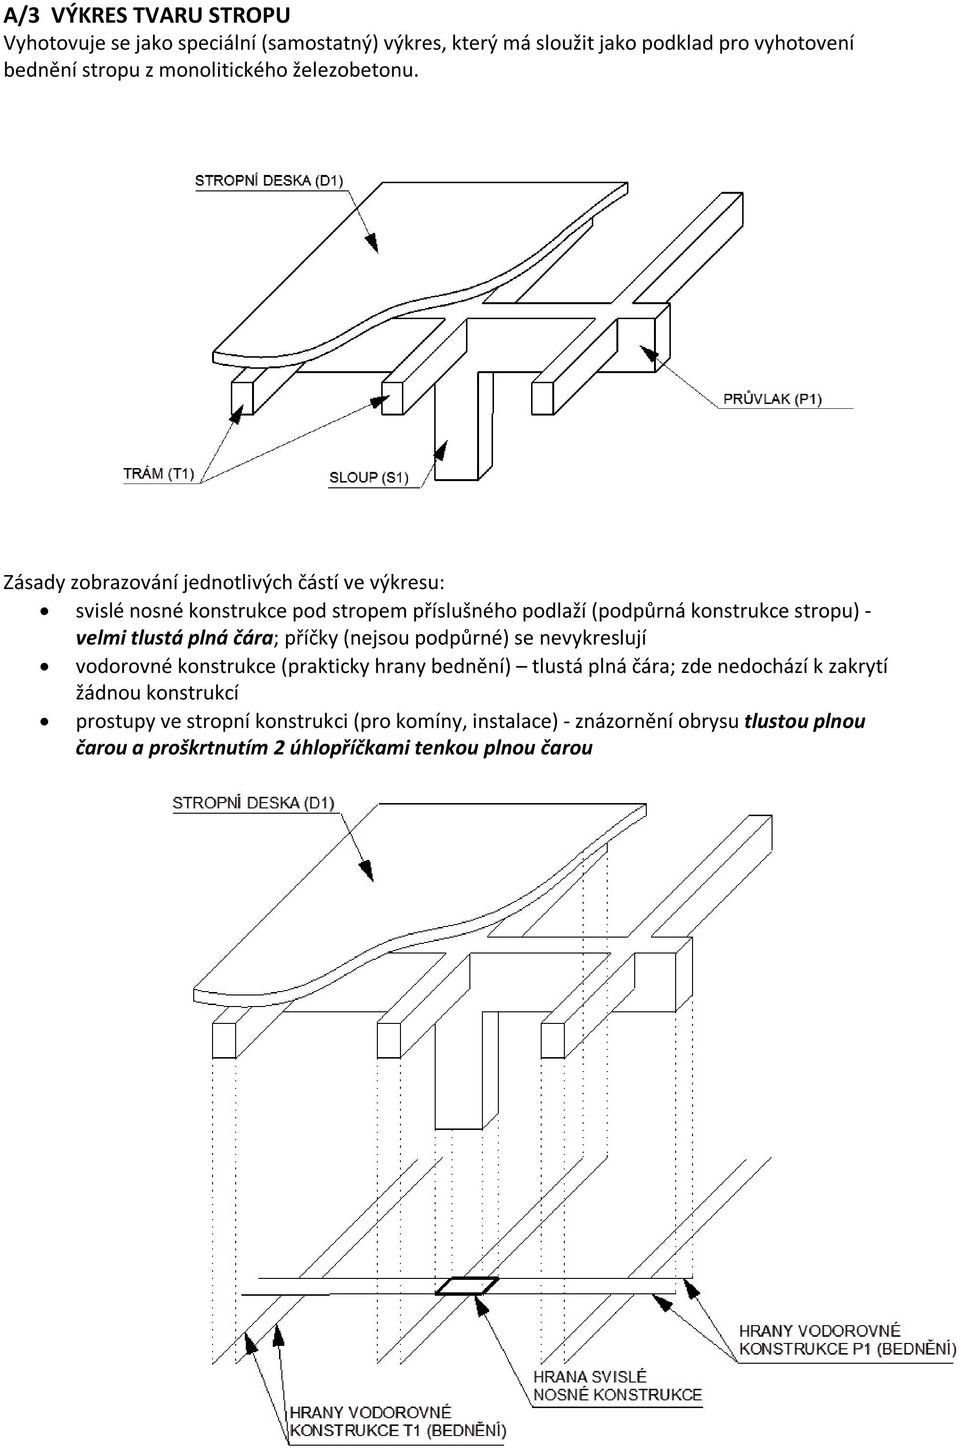 Zásady zobrazování jednotlivých částí ve výkresu: svislé nosné konstrukce pod stropem příslušného podlaží (podpůrná konstrukce stropu) - velmi tlustá